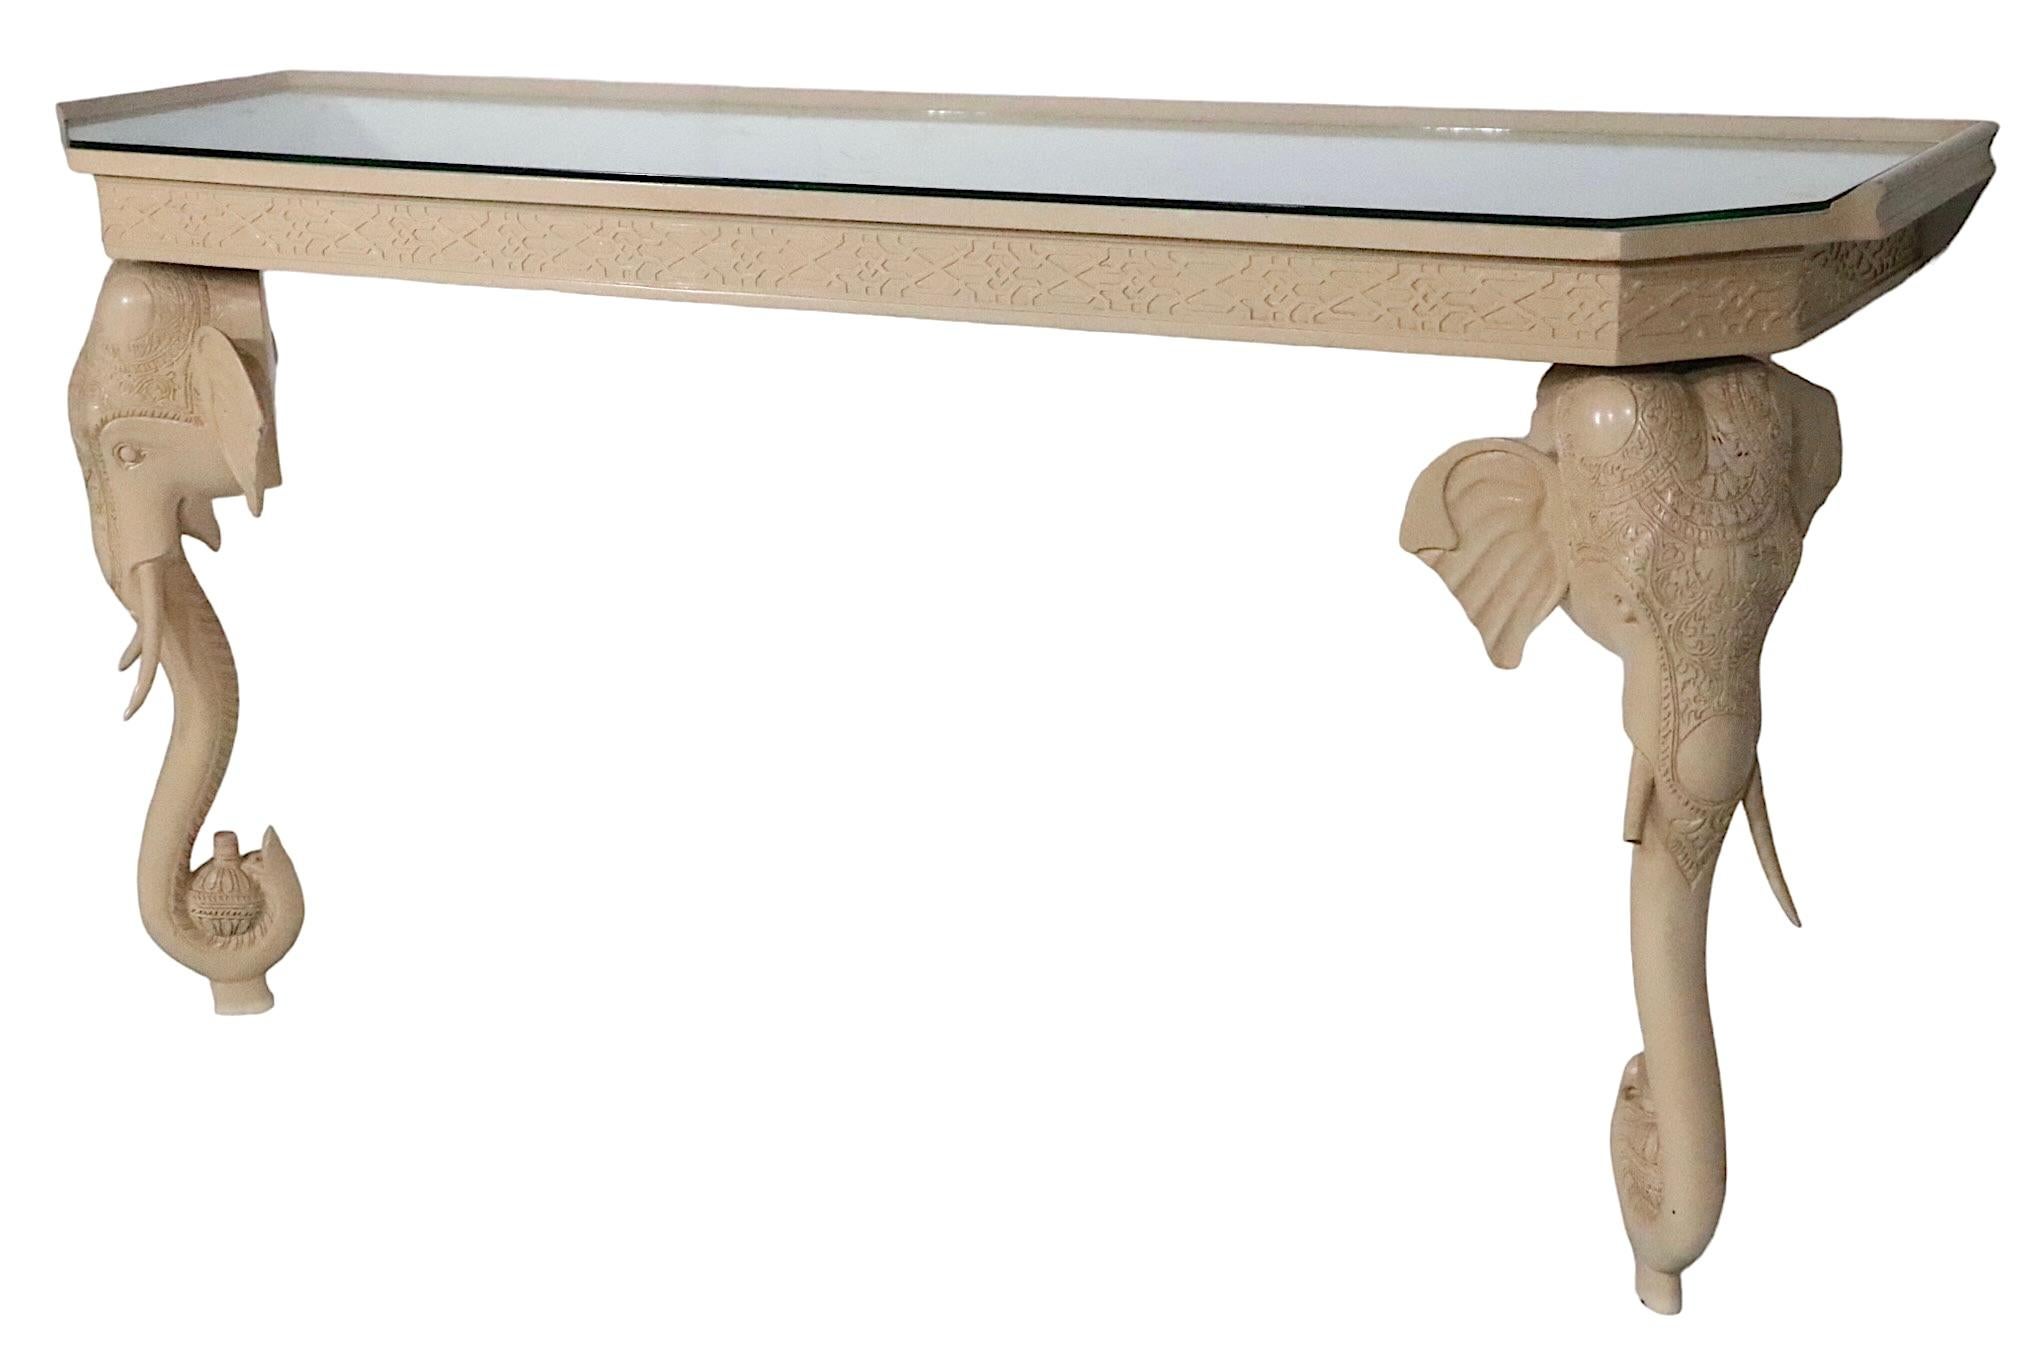 Console chic Hollywood Regency à tête d'éléphant stylisée et pieds en forme de tronc. La table est en bois sculpté, avec une peinture d'origine crème ou blanc cassé. Cet exemple est en bon état, il est structurellement sain et robuste, la finition